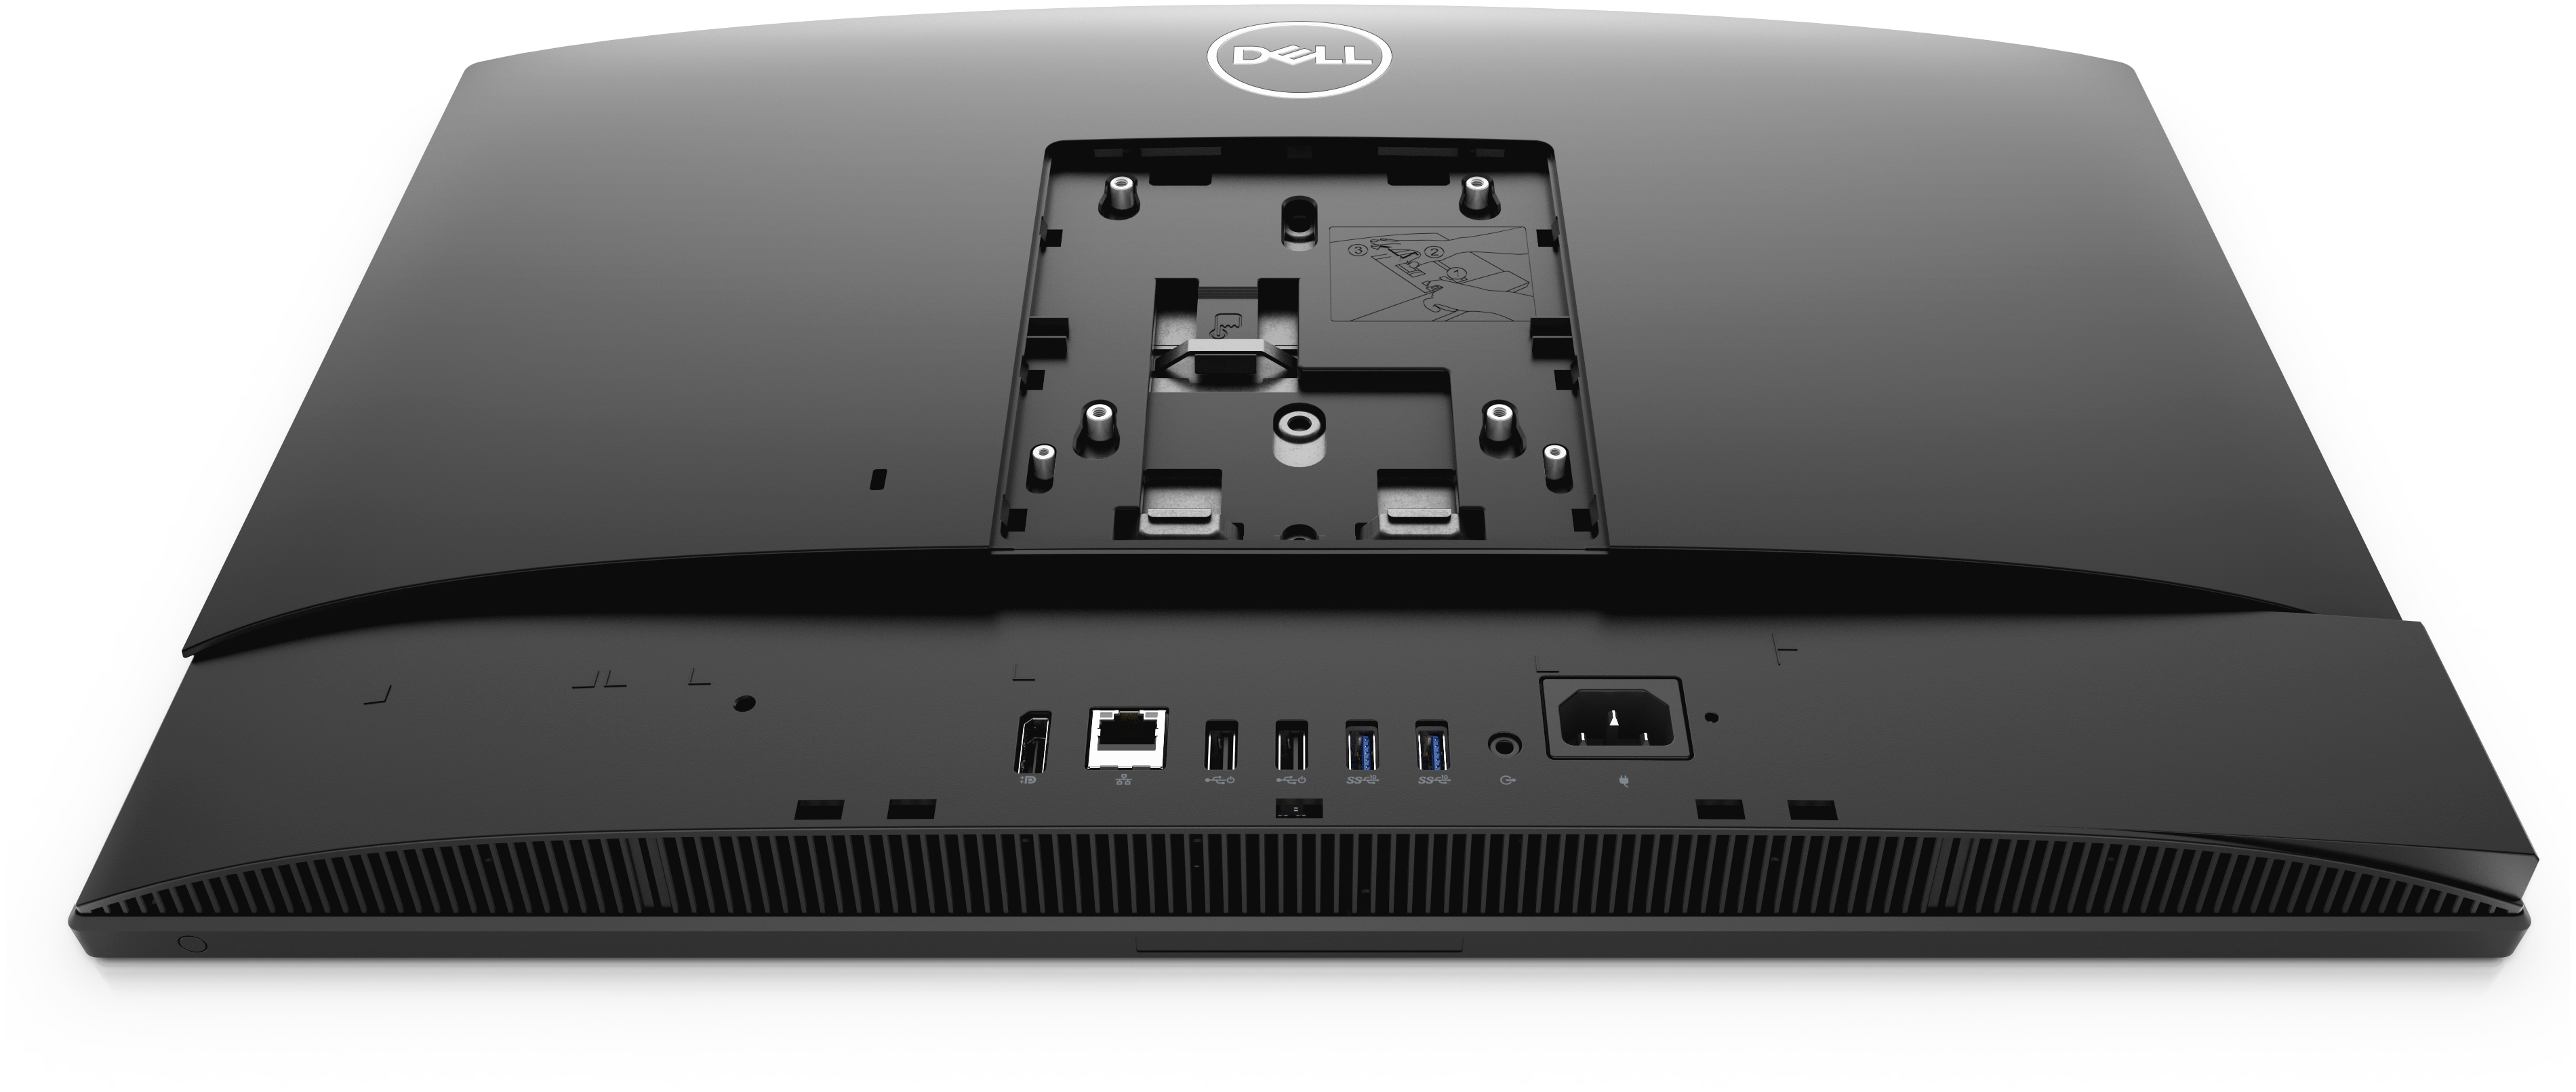 i5-11500T/8 GB/256GB SSD + 1TB/Ubuntu/24"FHD/No ODD/3 Yrs/HAS/Camera/ Intel Wifi + BT/Mcafee